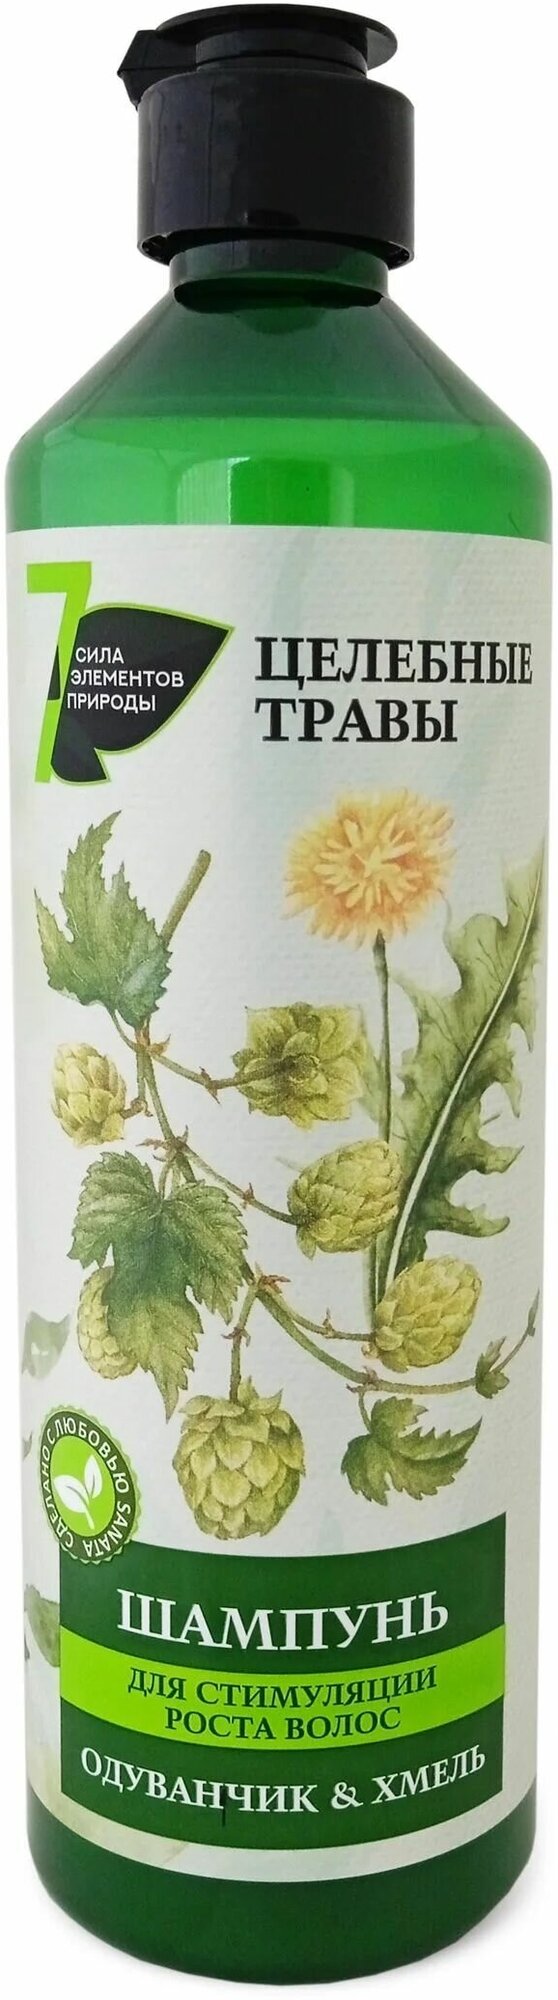 SANATA Шампунь Целебные Травы для стимуляции роста волос Одуванчик и Хмель, 500 мл